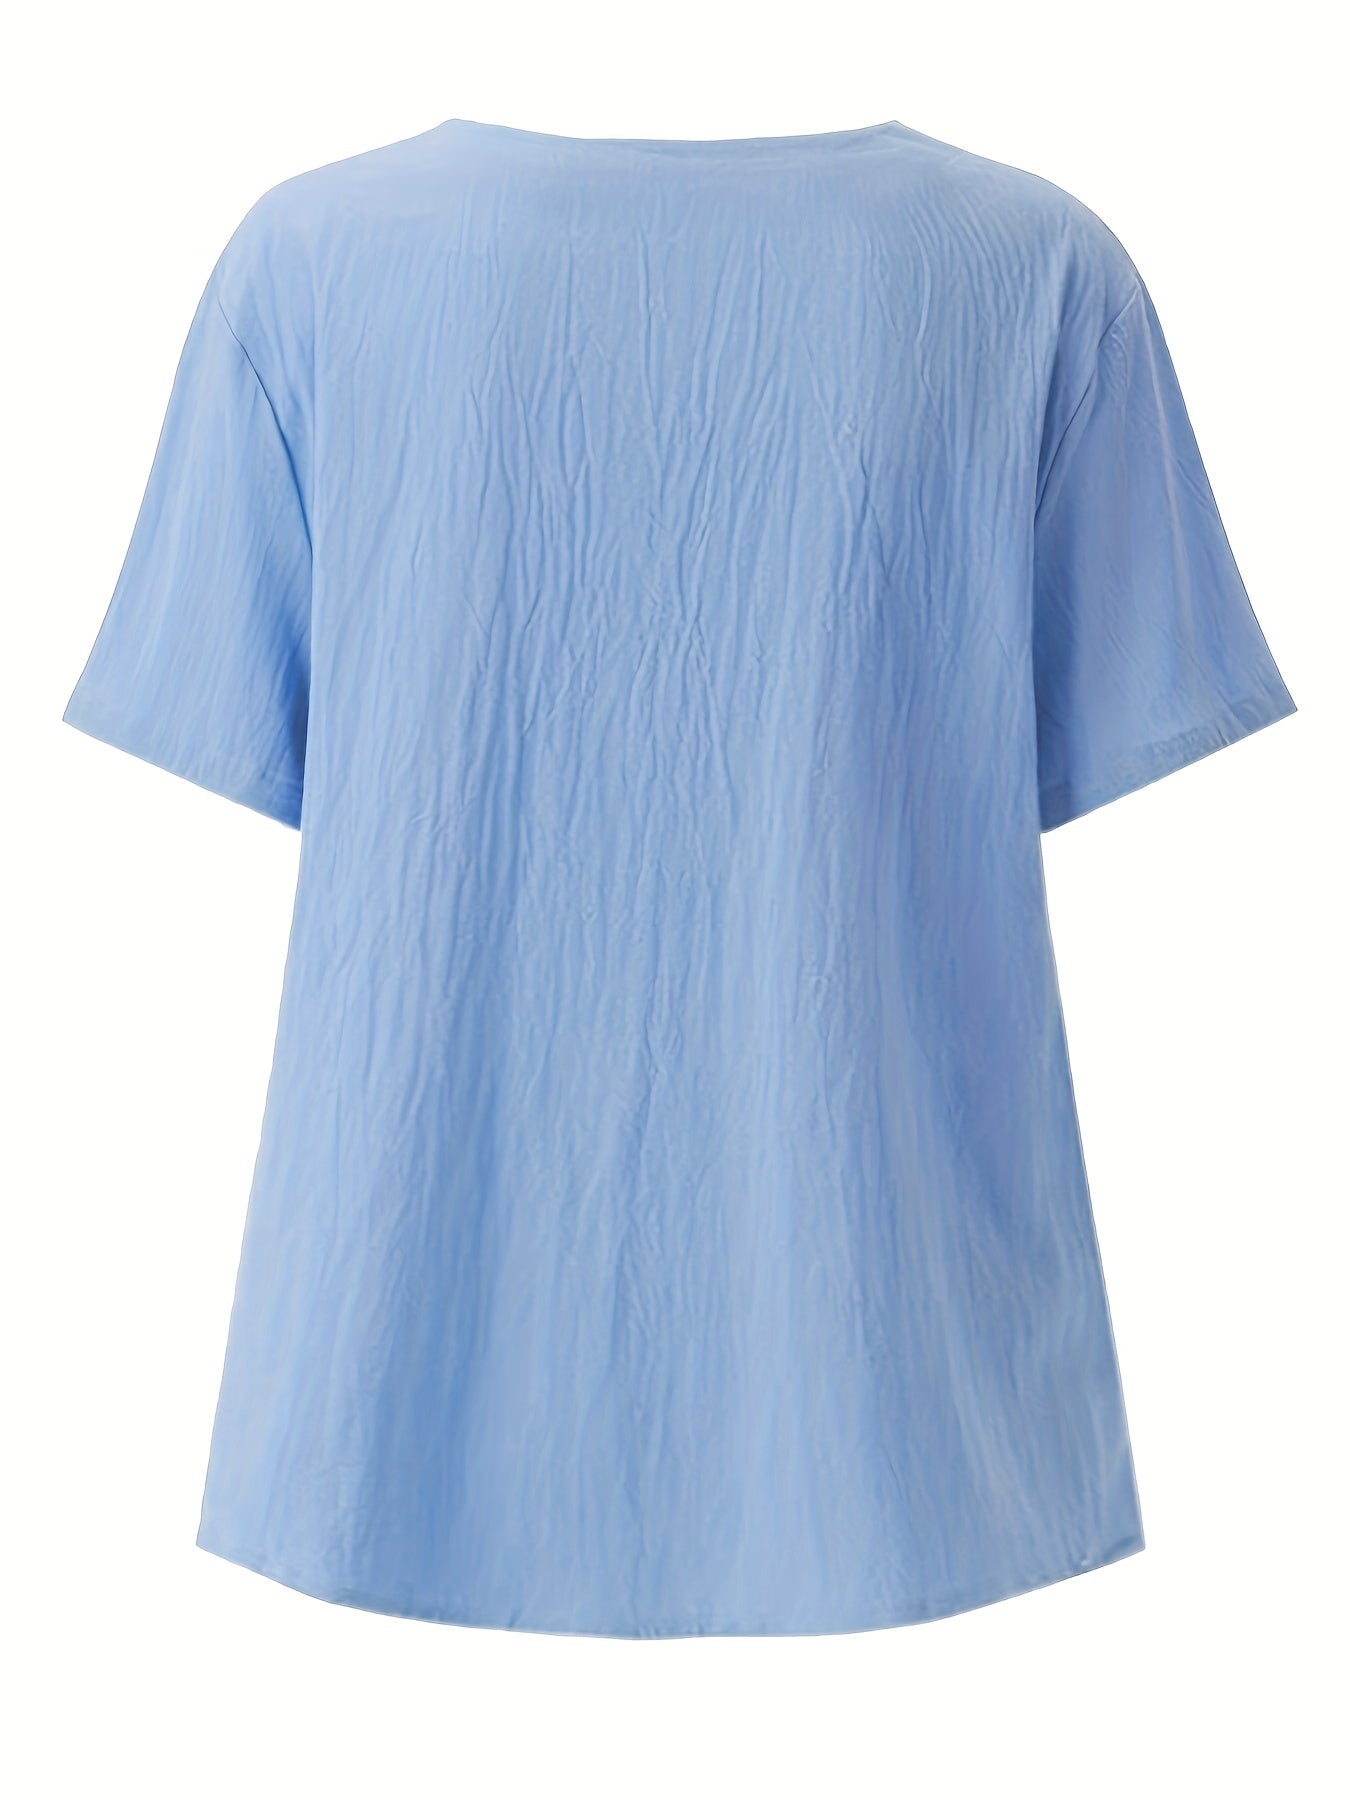 Vzyzv Dandelion Print Blouse, Casual Crew Neck Short Sleeve Blouse For Spring & Summer, Women's Clothing